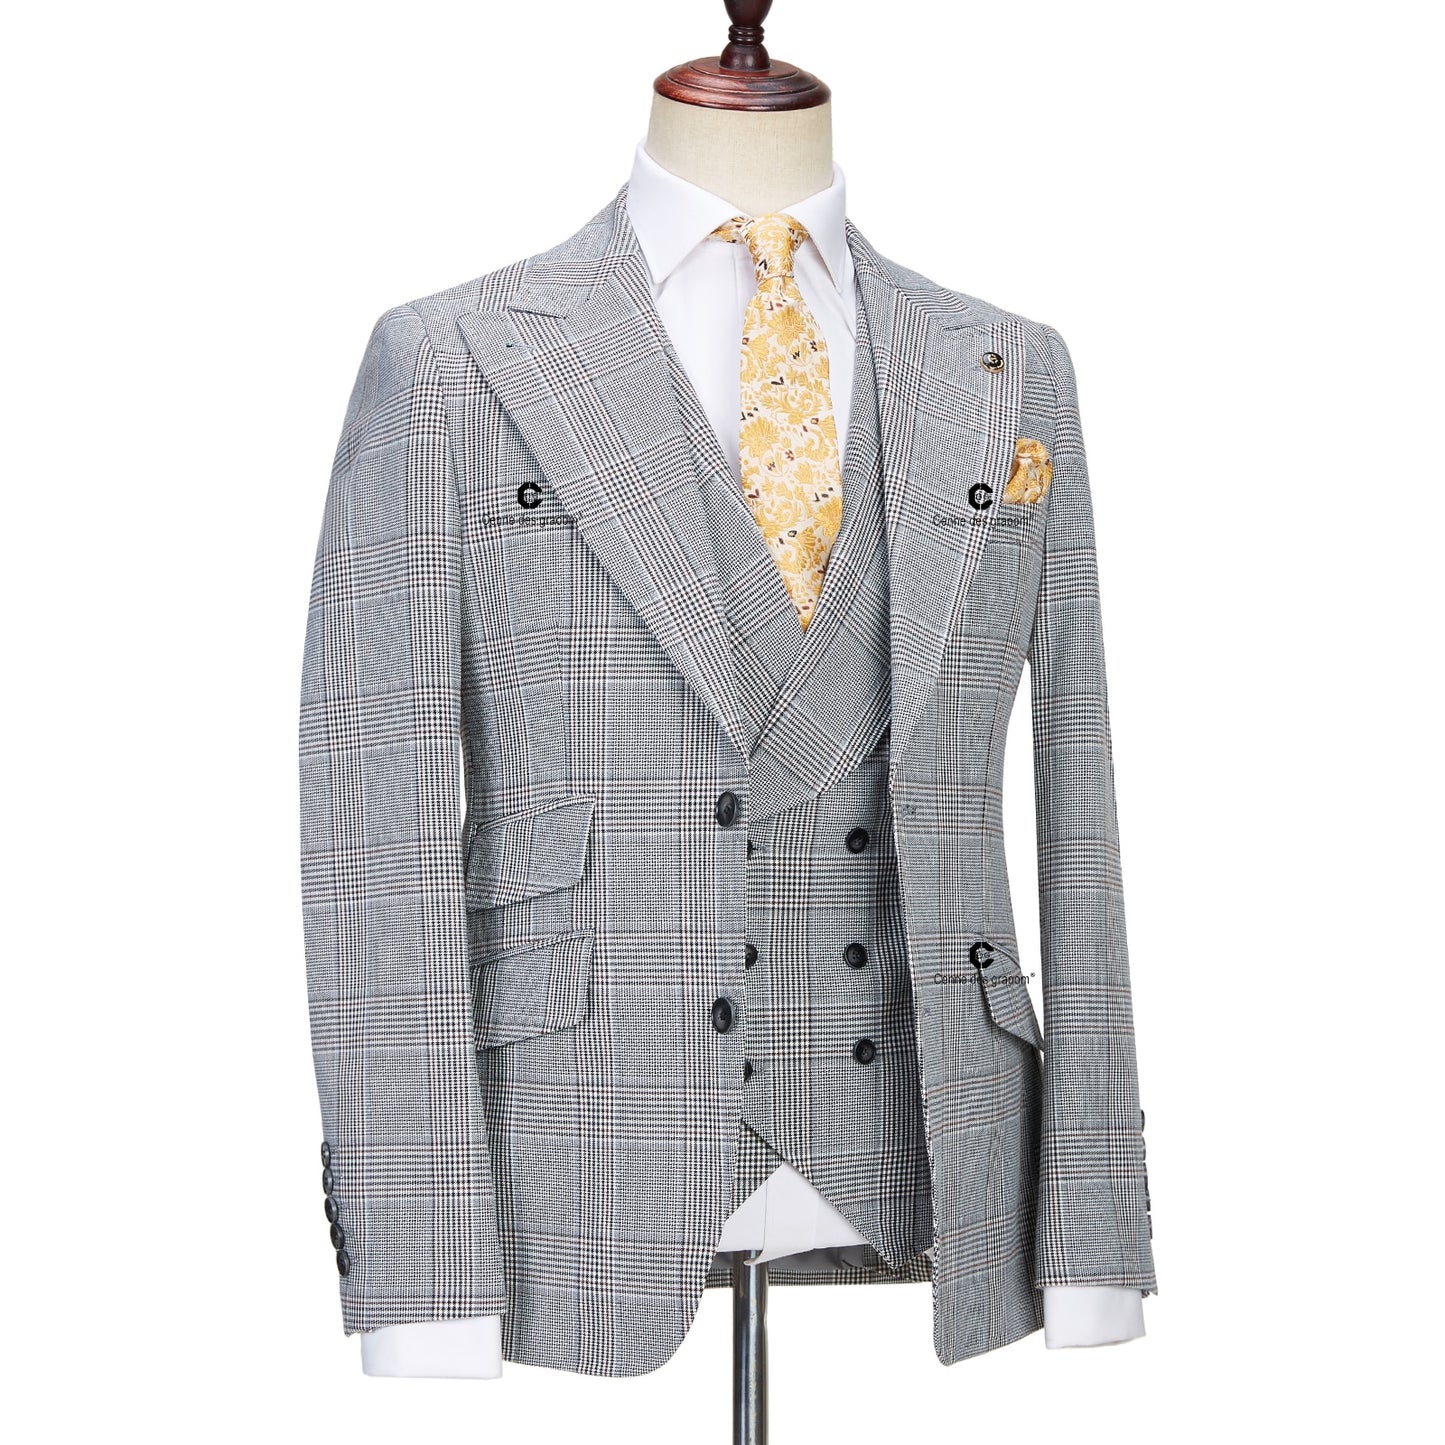 The Regal Glen Plaid Suit